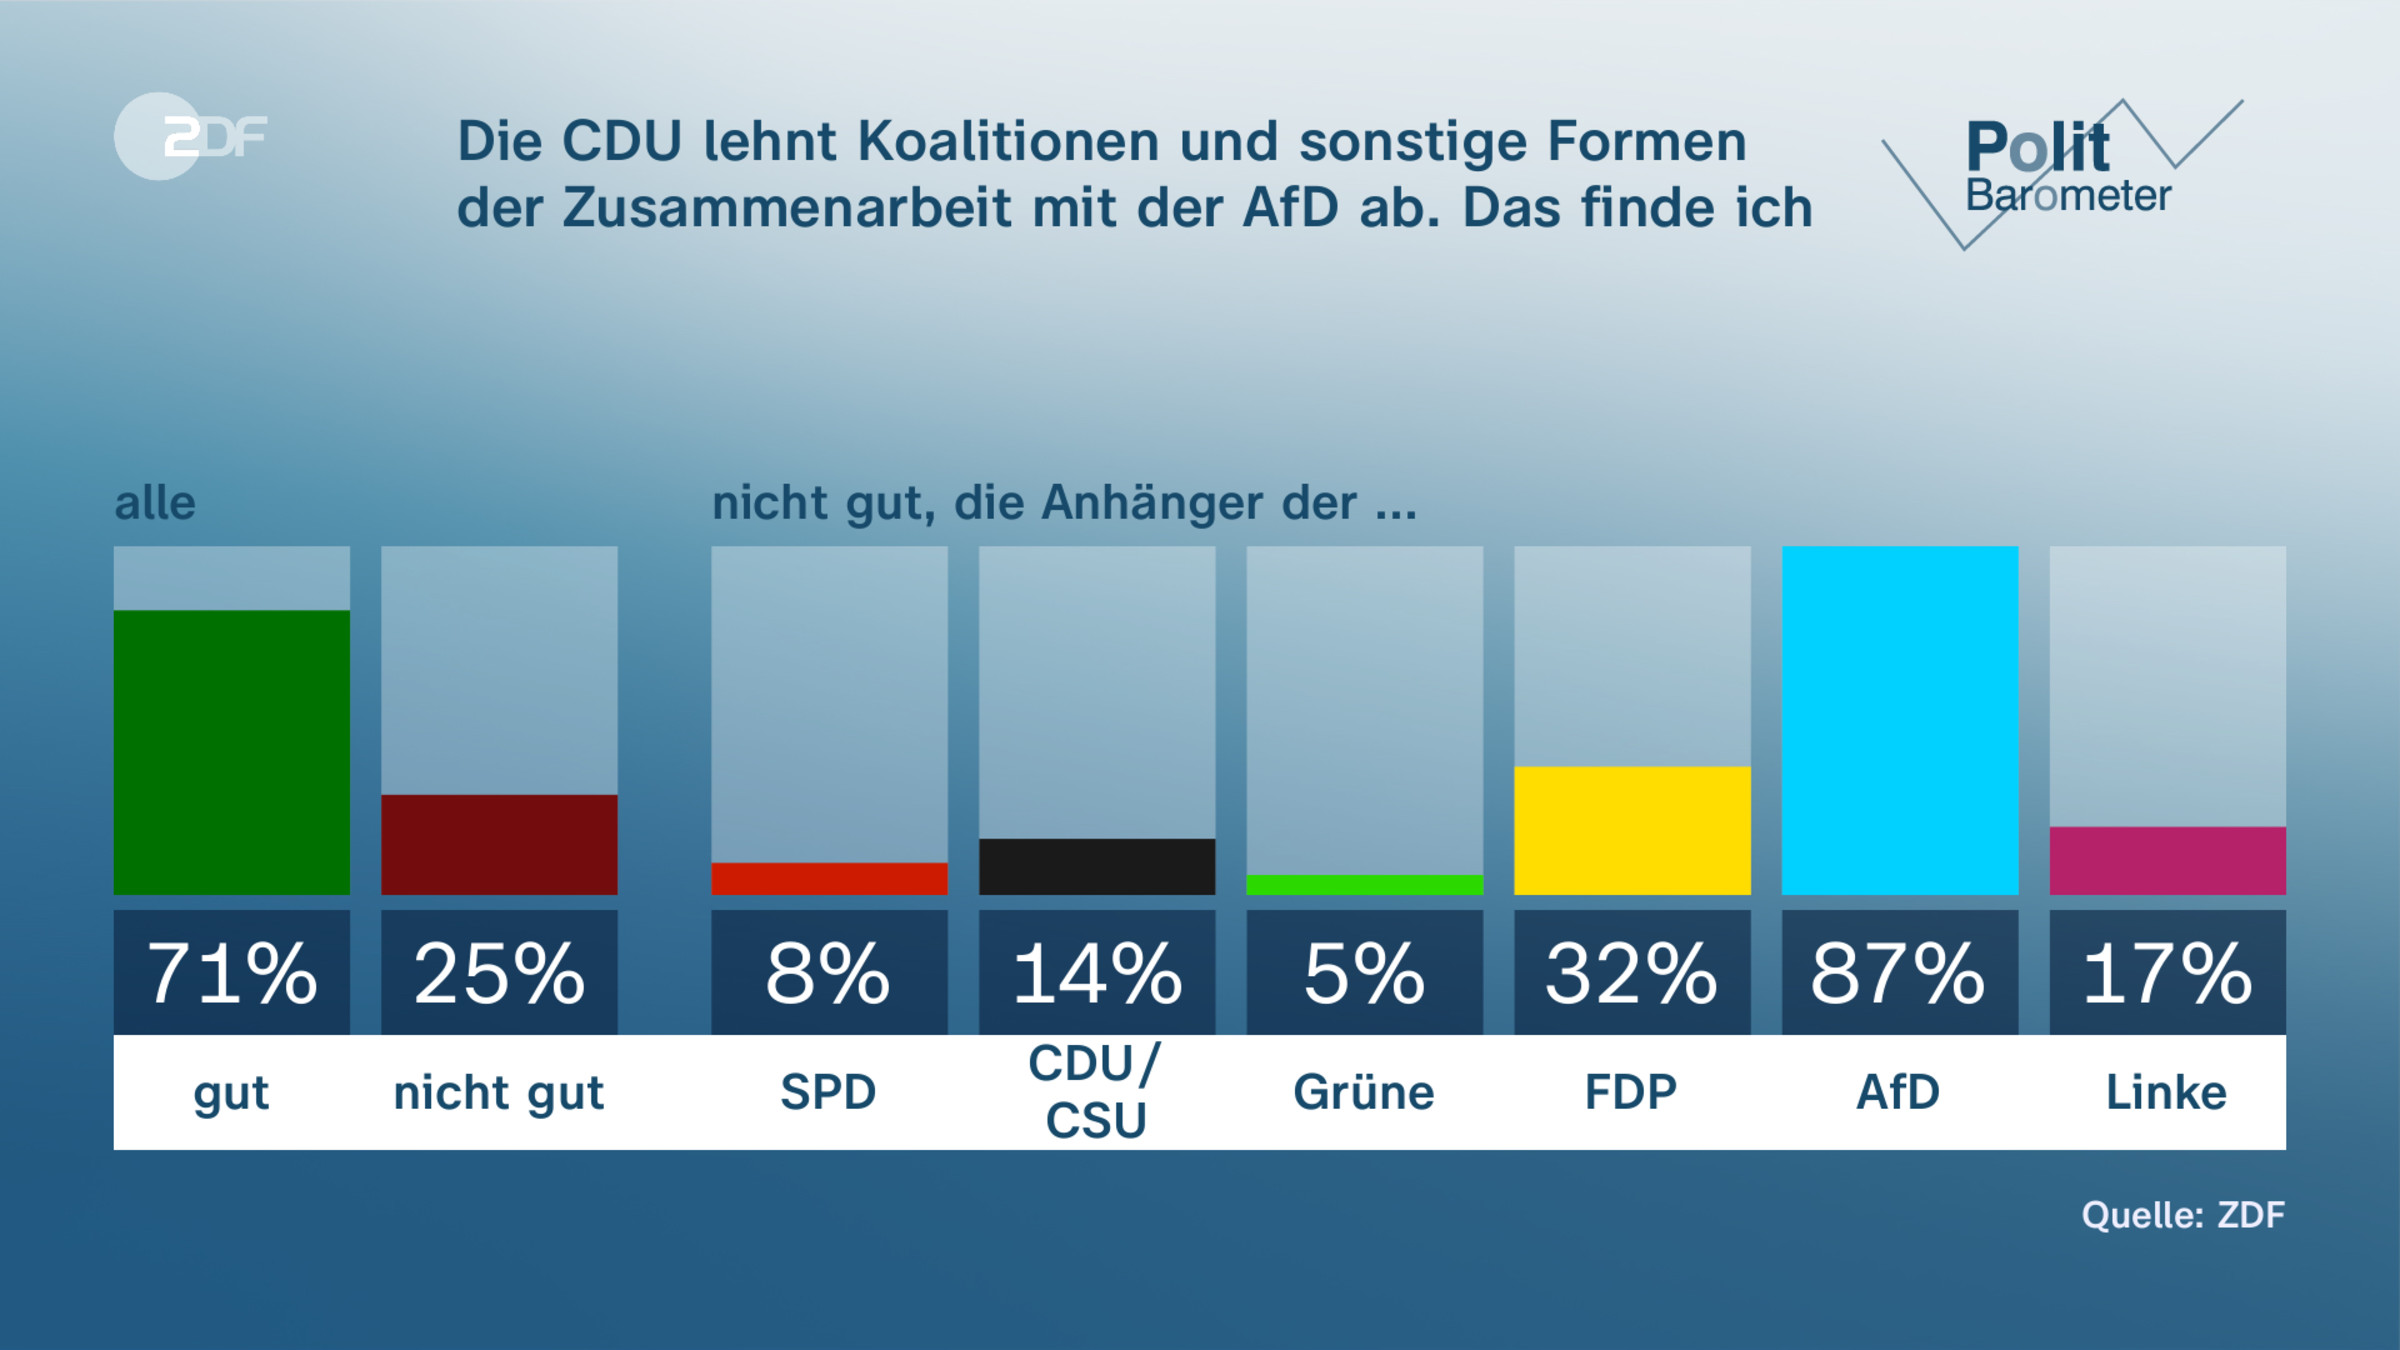 Die CDU lehnt Koalitionen und sonstige Formen der Zusammenarbeit mit der AfD ab. Das finde ich …